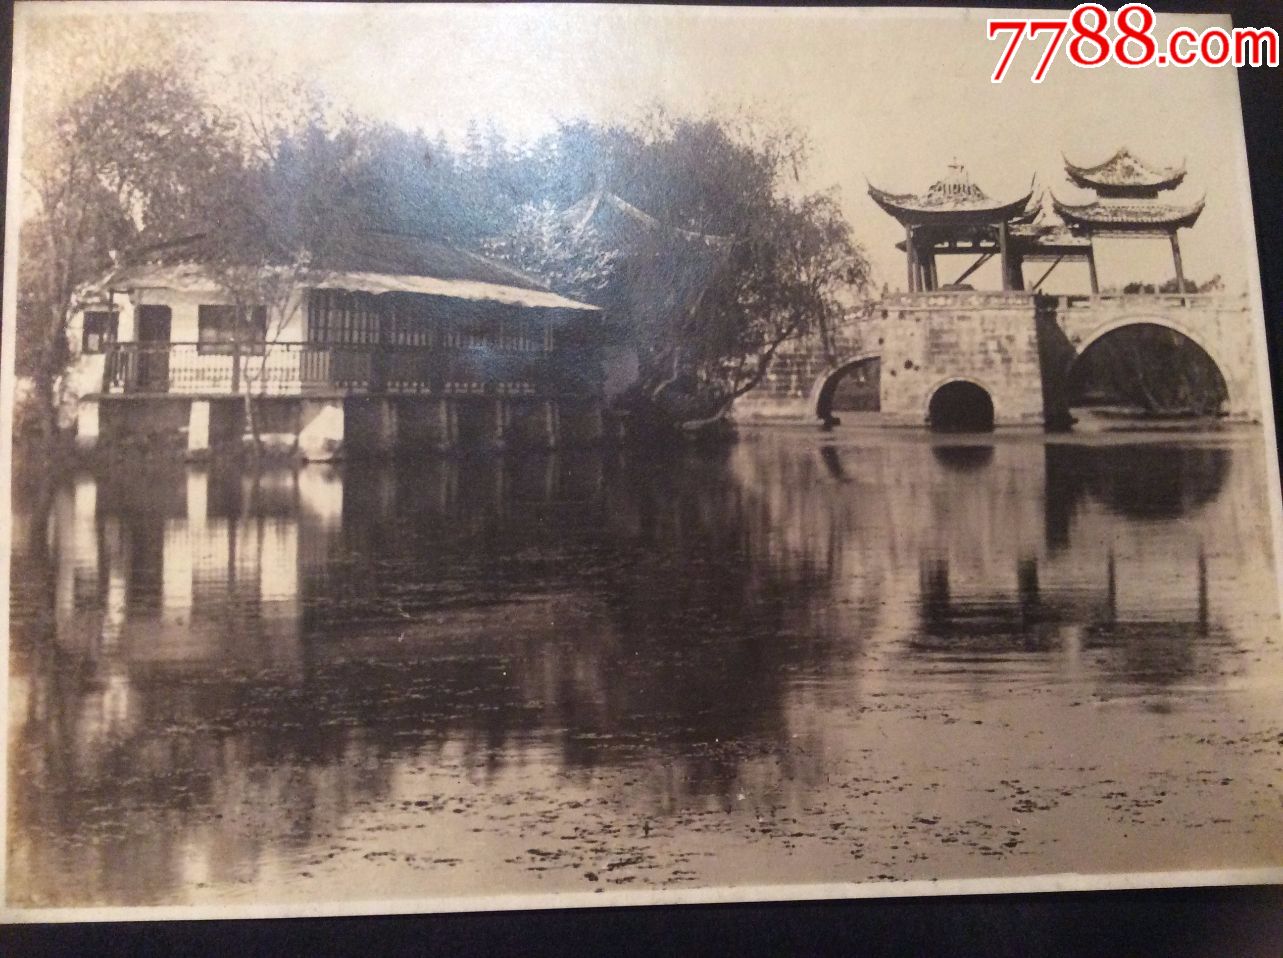 罕见扬州老照片!1935年左右的扬州瘦西湖,五亭桥残破不已!十分难得!